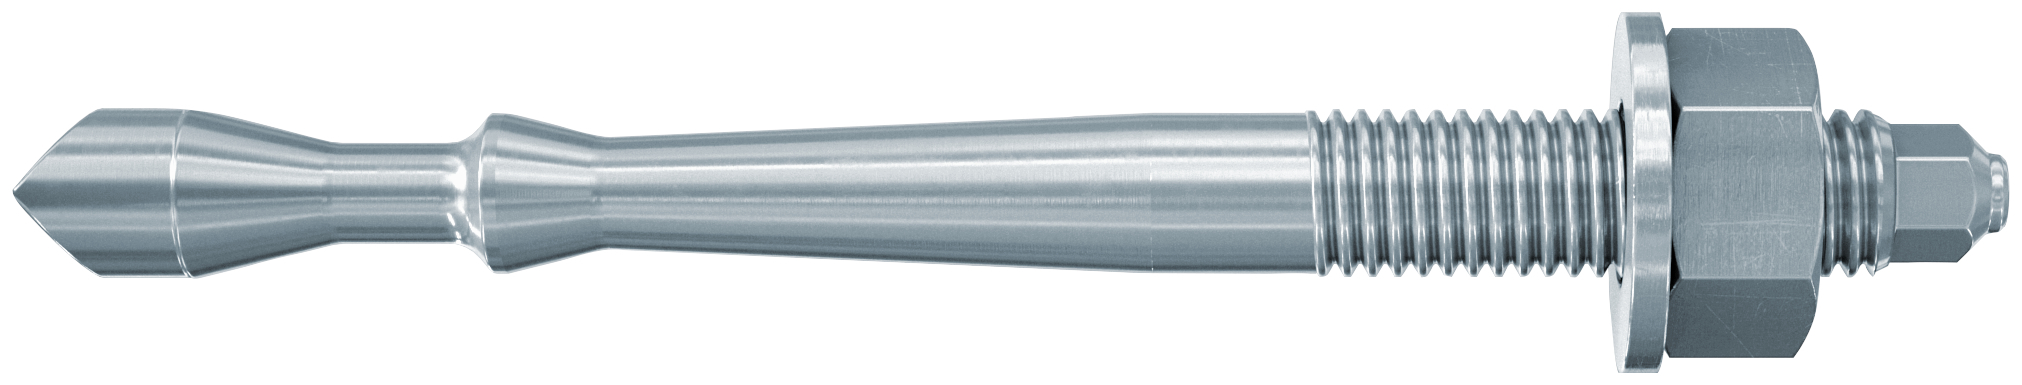 fischer Barra multicono in acciaio FHB II-A S M10x60/60 per ancorante chimico FIS HB (1 Pz.) Barra multicono corta in acciaio zincato classe 8.8. Massime prestazioni a trazione in calcestruzzo fessurato e a ridotte distanze dai bordi..